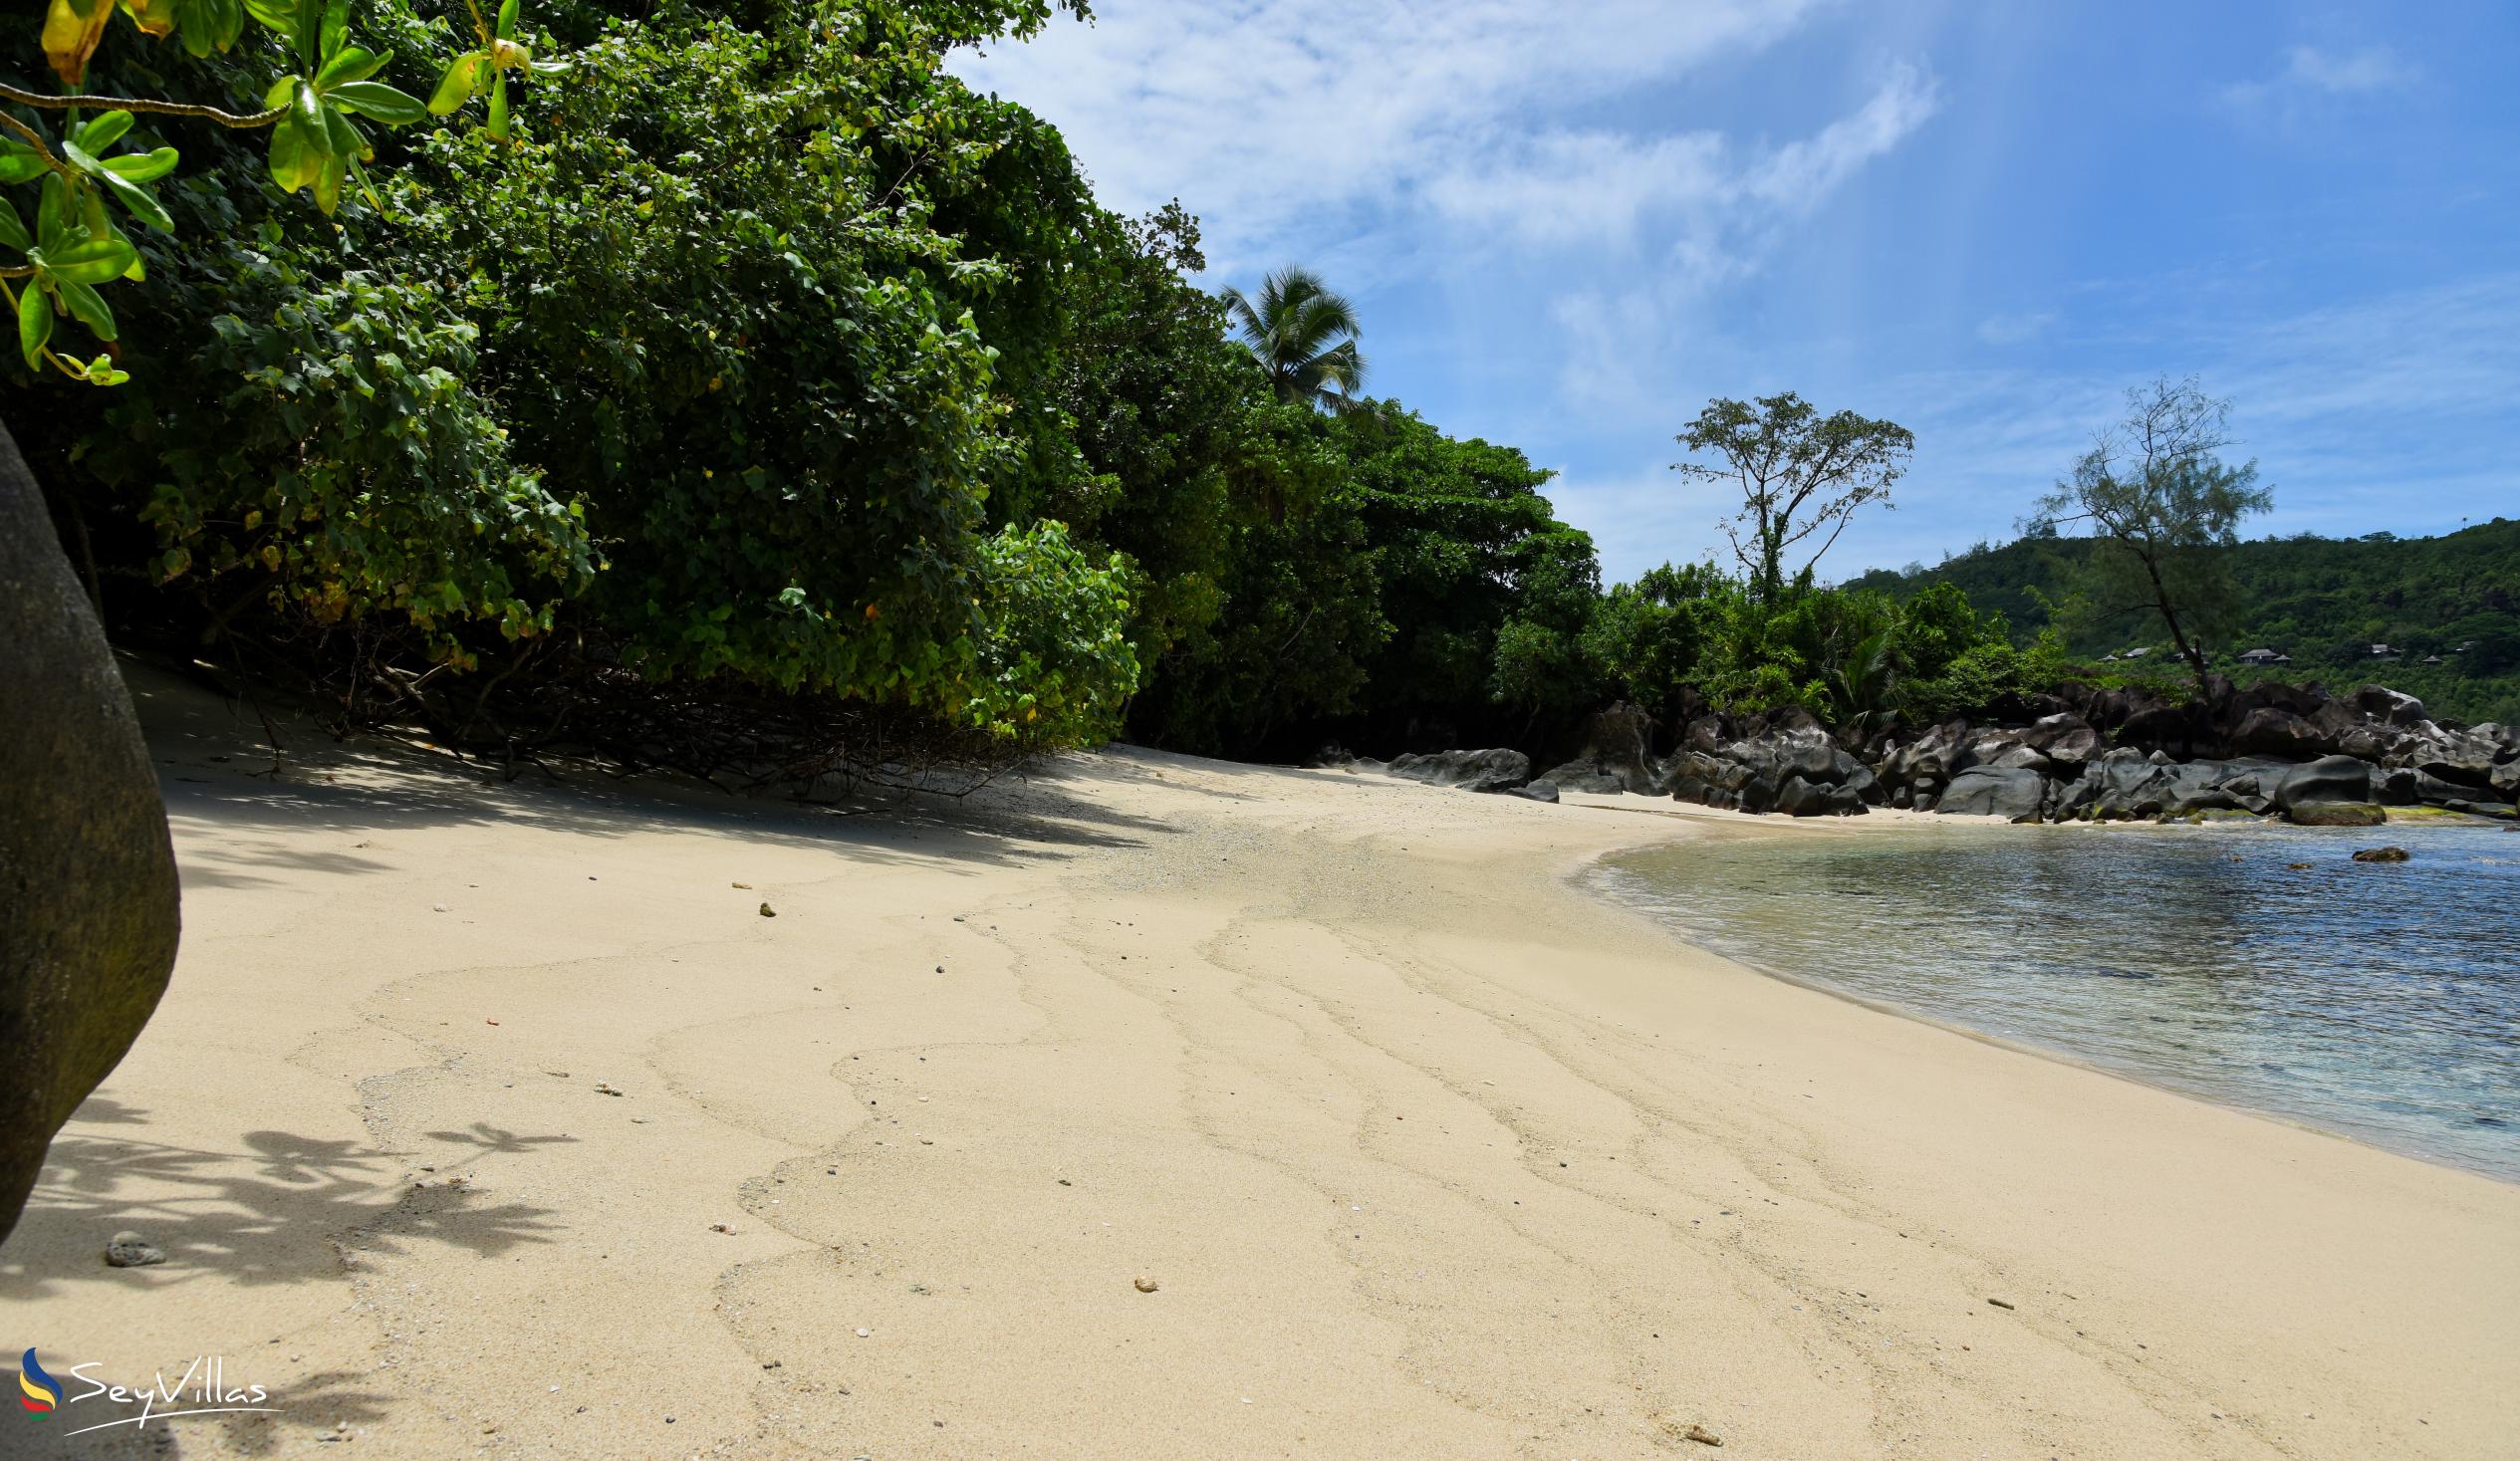 Foto 6: Anse l'Amour - Mahé (Seychelles)